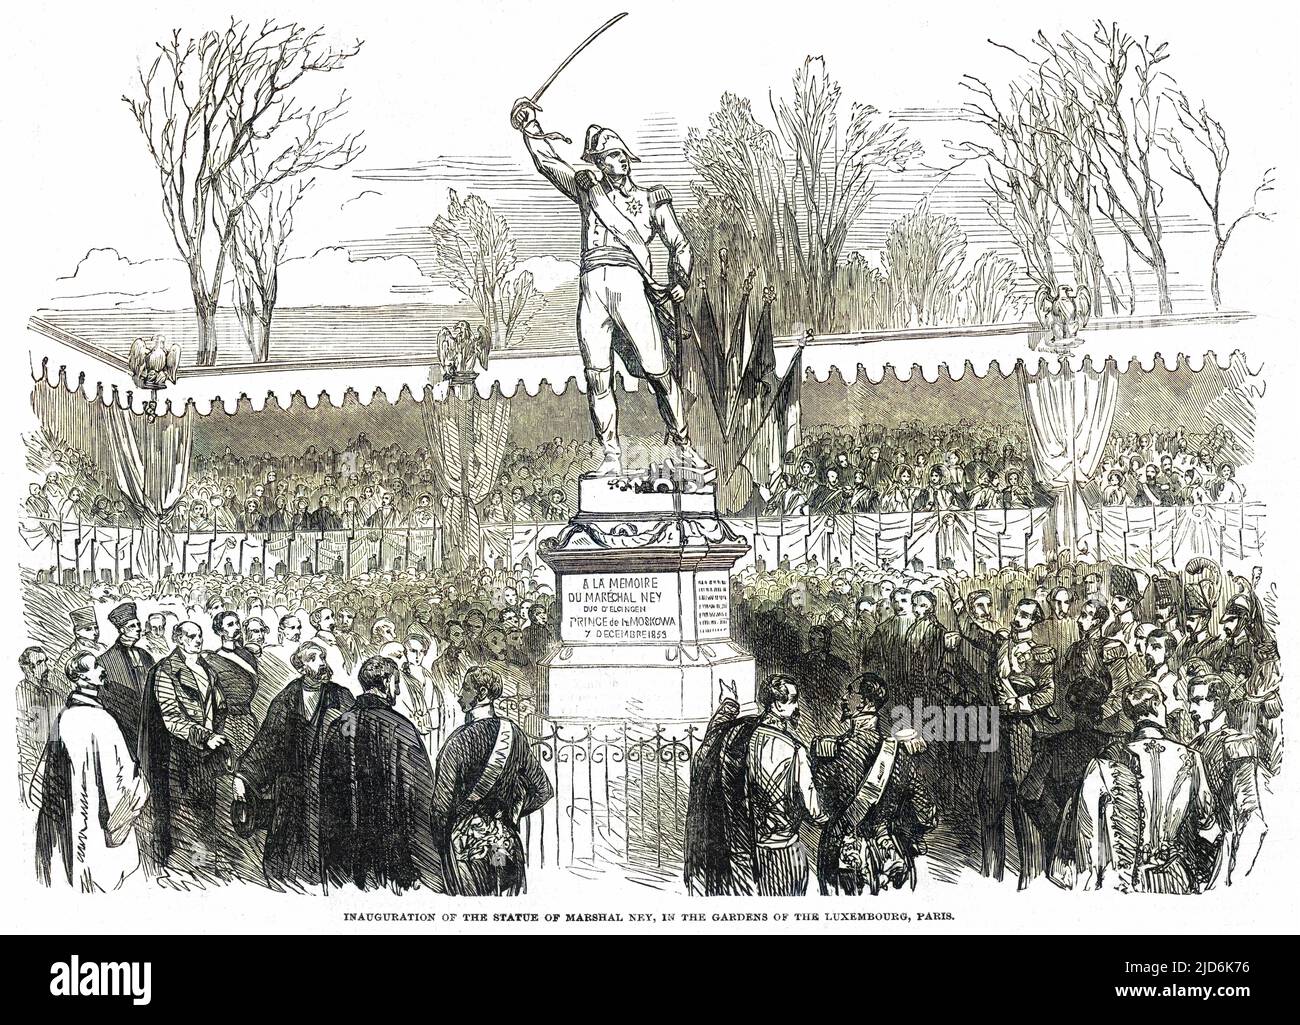 Eine Statue von le marechal Ney wird von Napoleon III. In den Gärten von Luxemburg, Paris, eingeweiht. Kolorierte Version von: 10167304 Datum: 1853 Stockfoto